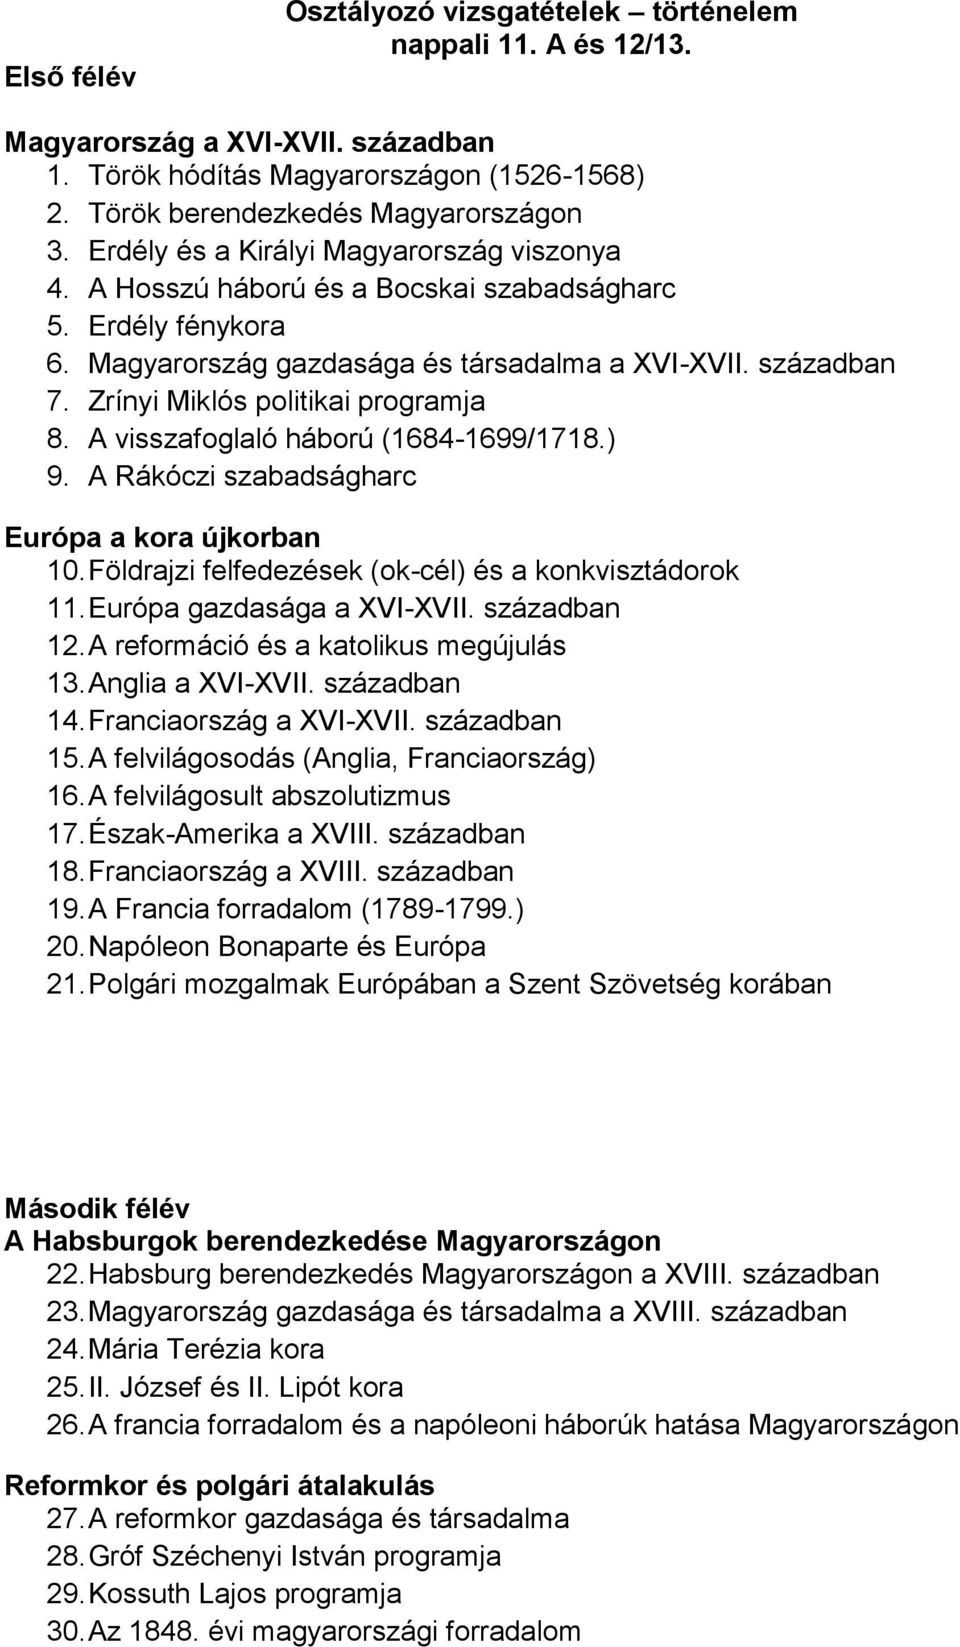 Zrínyi Miklós politikai programja 8. A visszafoglaló háború (1684-1699/1718.) 9. A Rákóczi szabadságharc Európa a kora újkorban 10.Földrajzi felfedezések (ok-cél) és a konkvisztádorok 11.